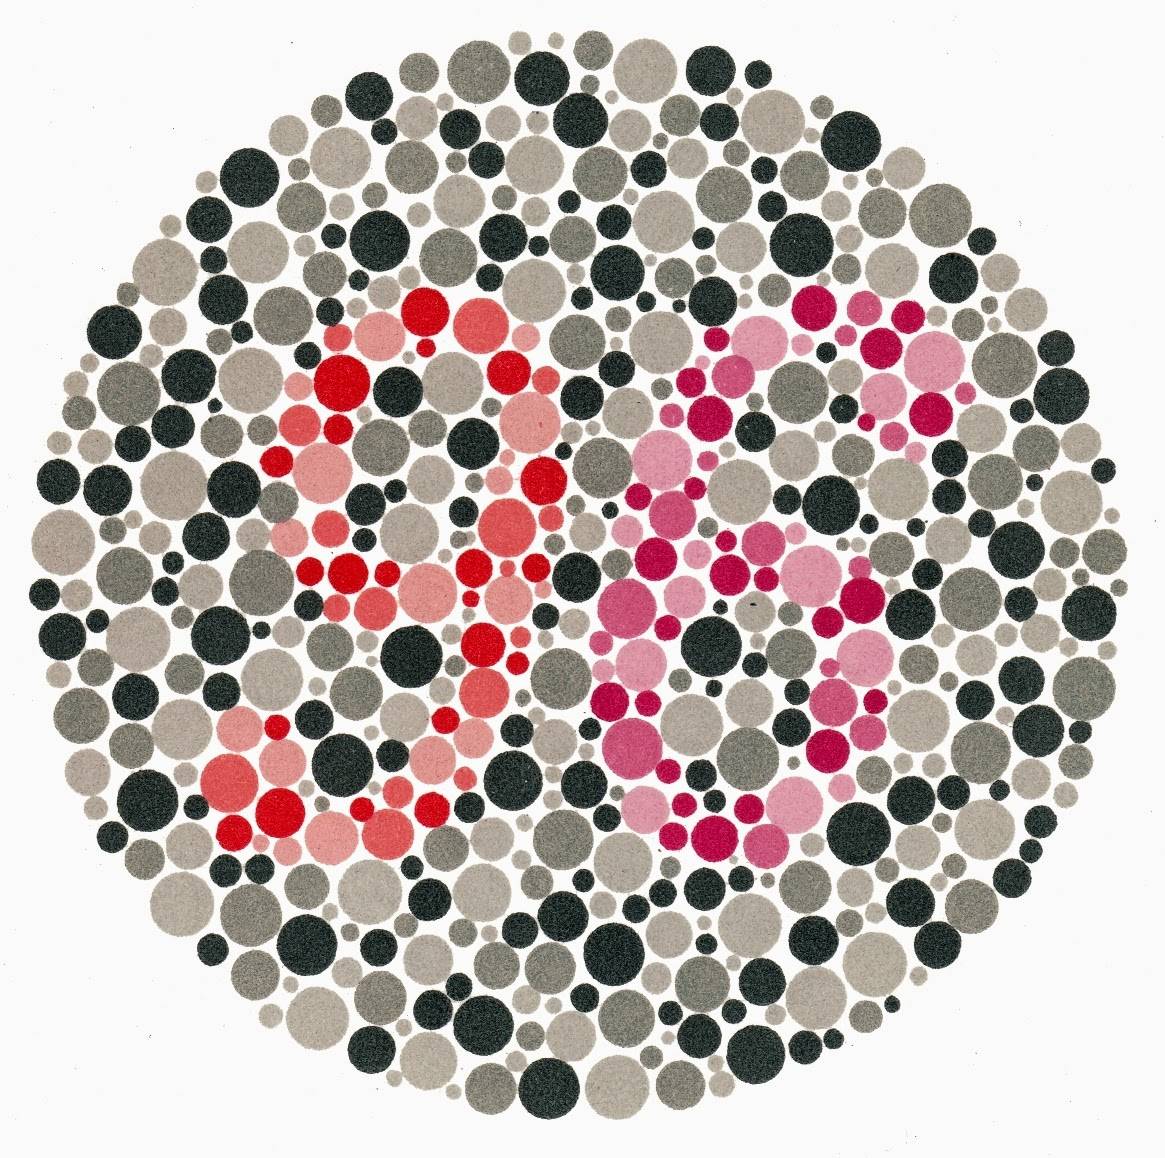 Таблицы рабкина для исследования зрения на цветовосприятие – тест на дальтонизм с большими картинками и с ответами онлайн